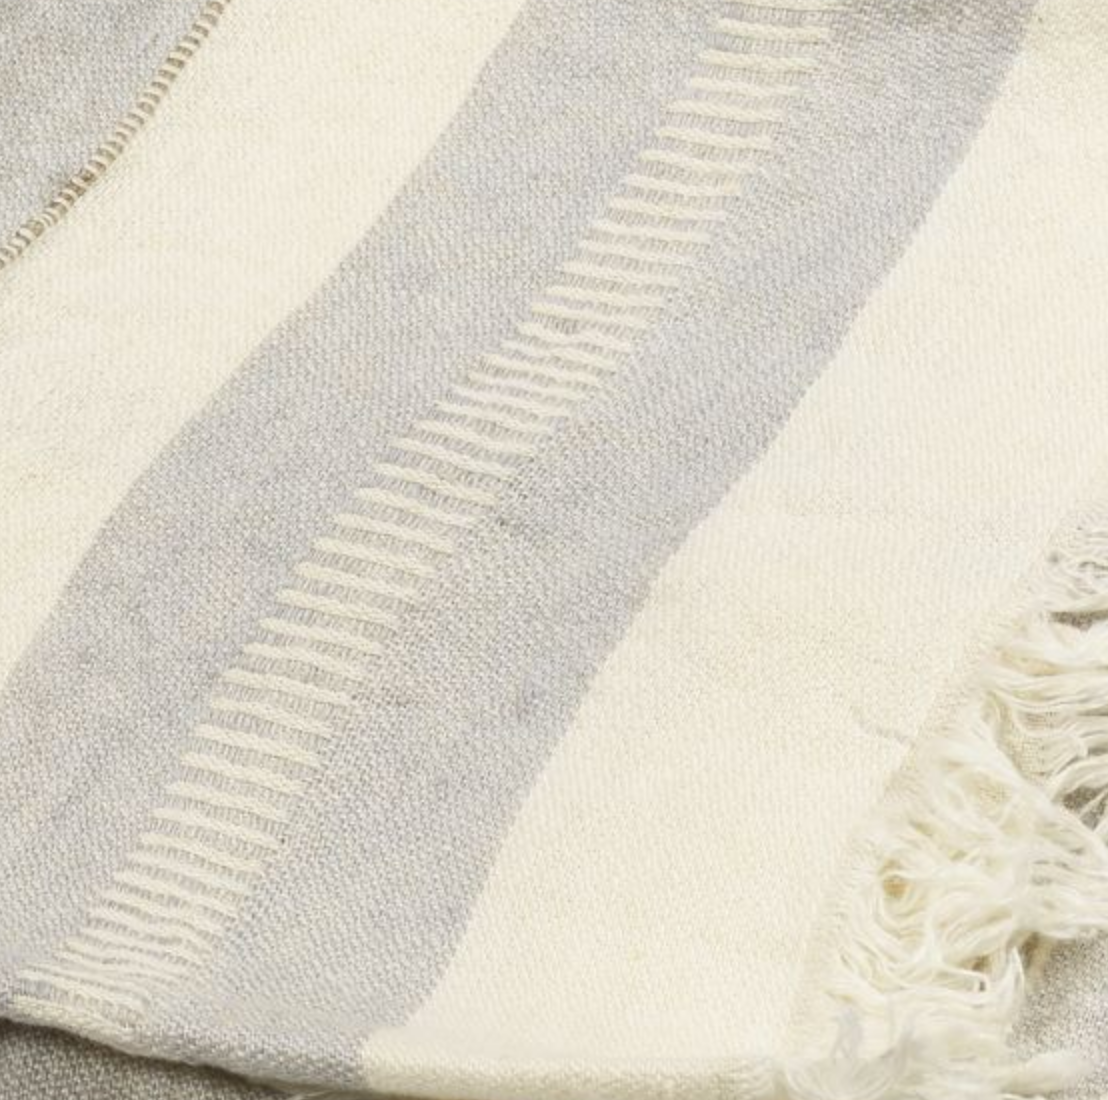 Belgian Fouta Tea/Guest Towel - Ash Stripe or Oyster Stripe